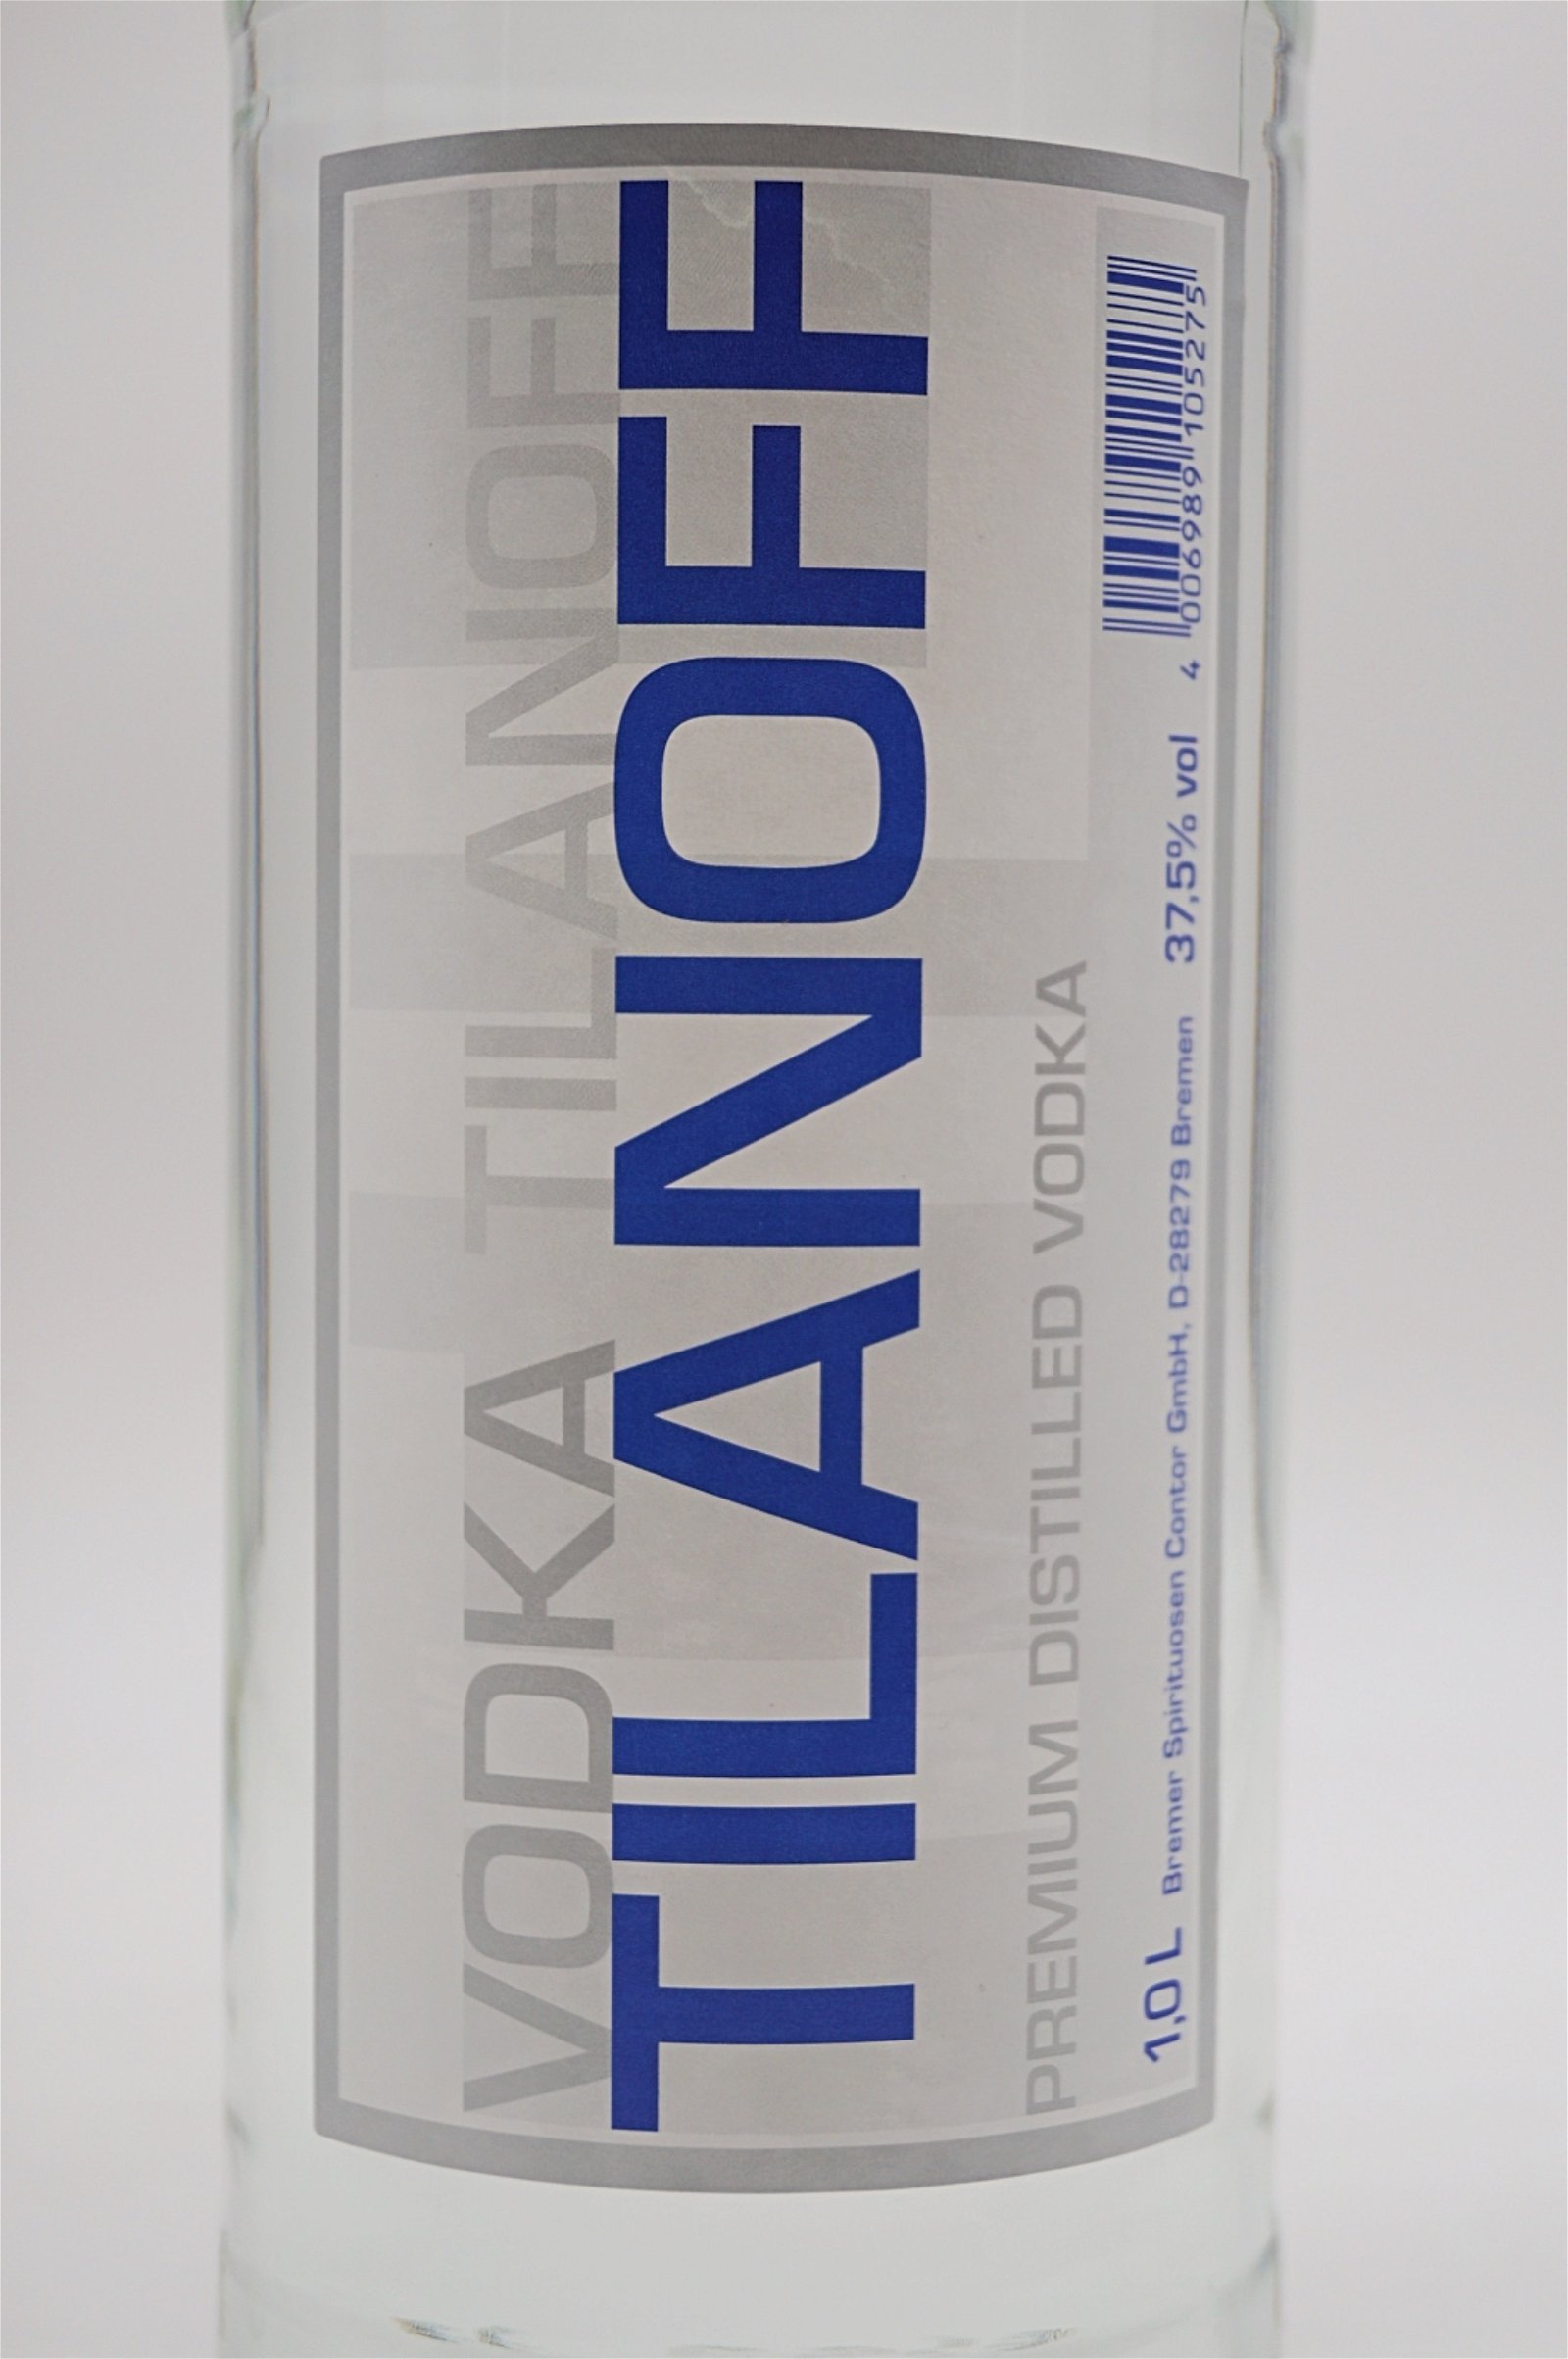 Tilanoff Premium Distilled Vodka